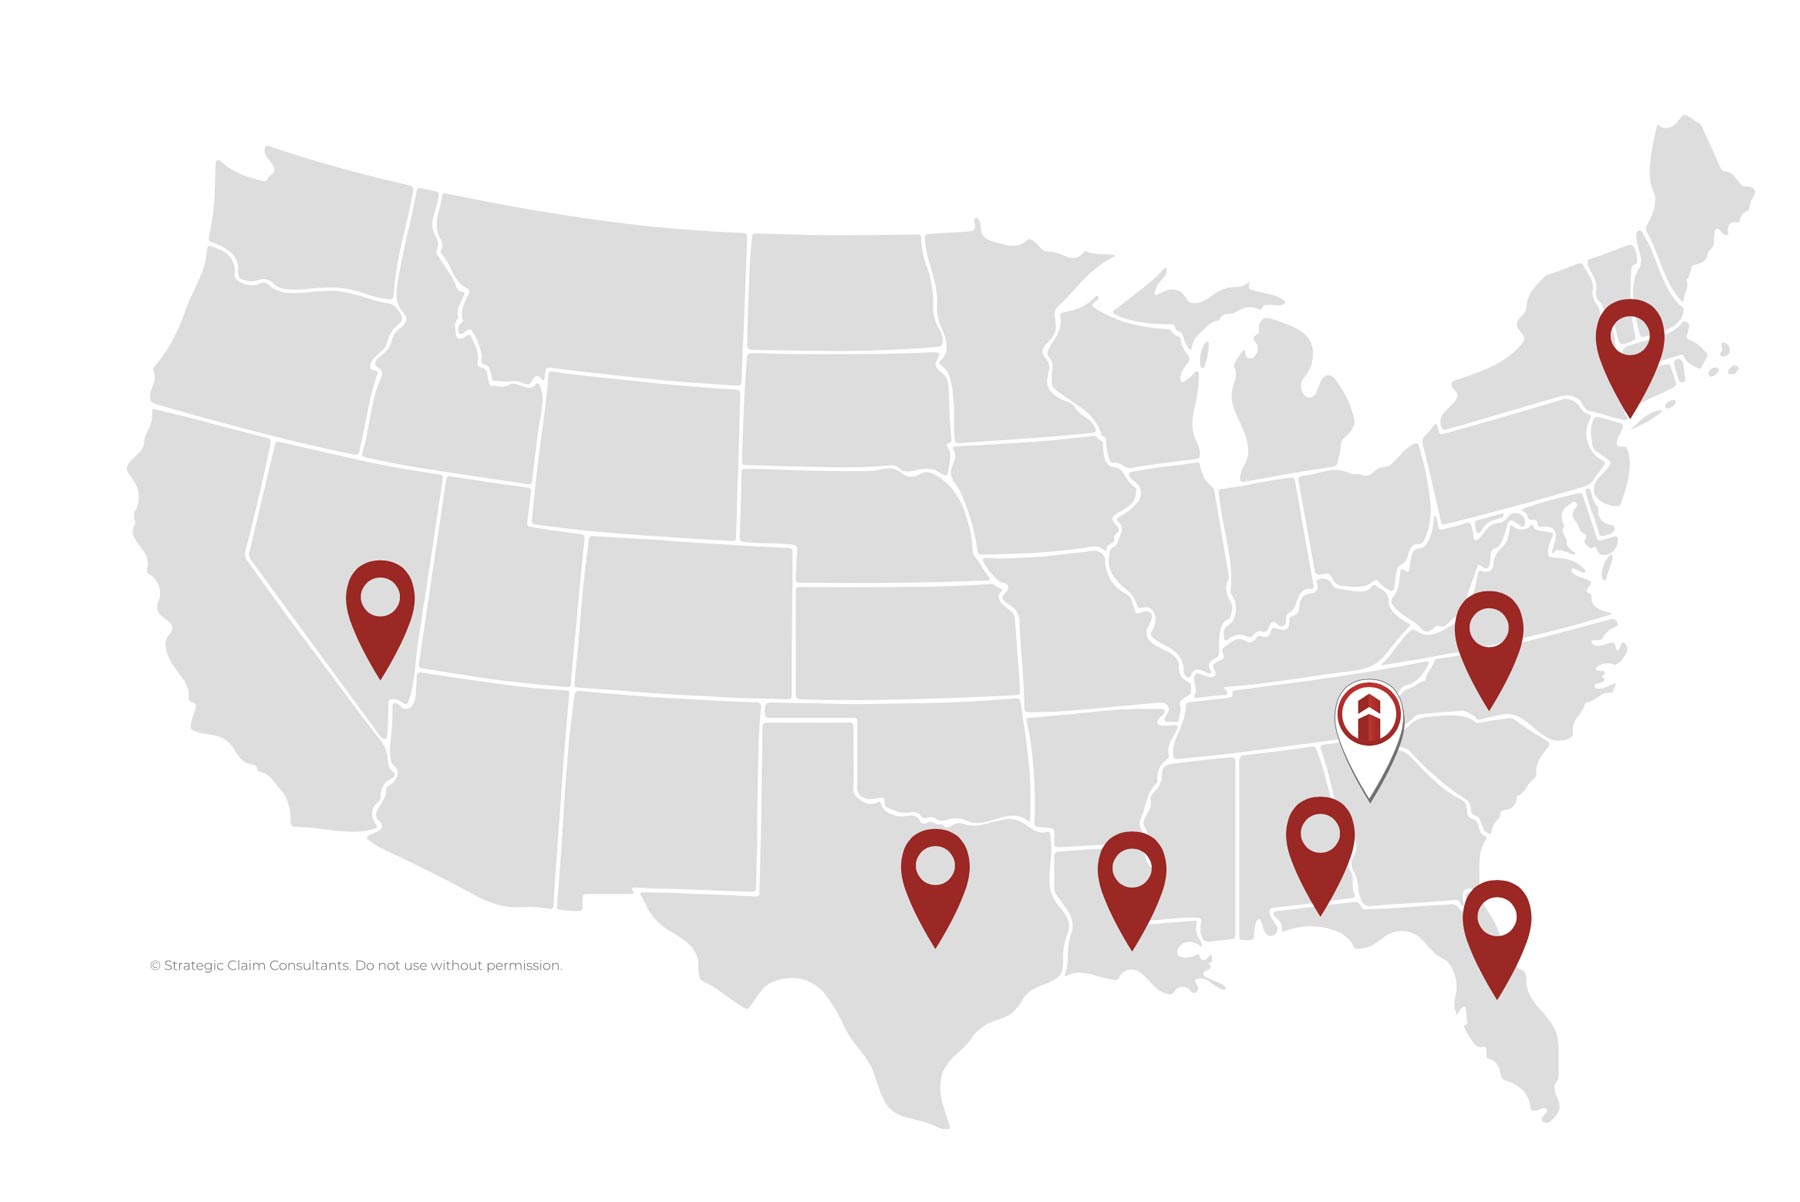 Strategic Claim Consultants locations across America